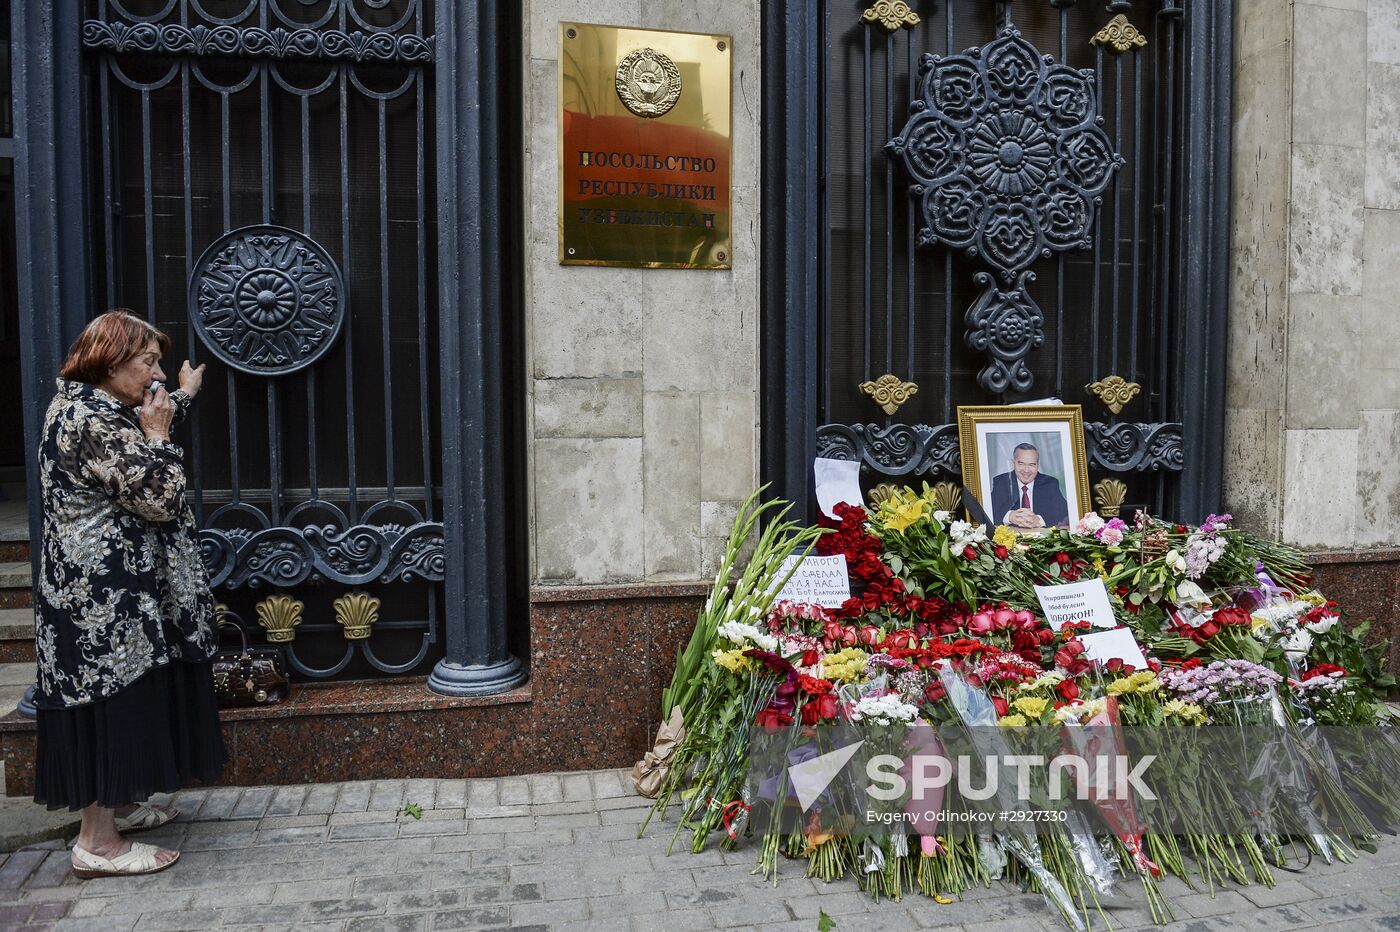 Flowers by Uzbek embassy in Moscow in light of passing of Uzbek President Islam Karimov